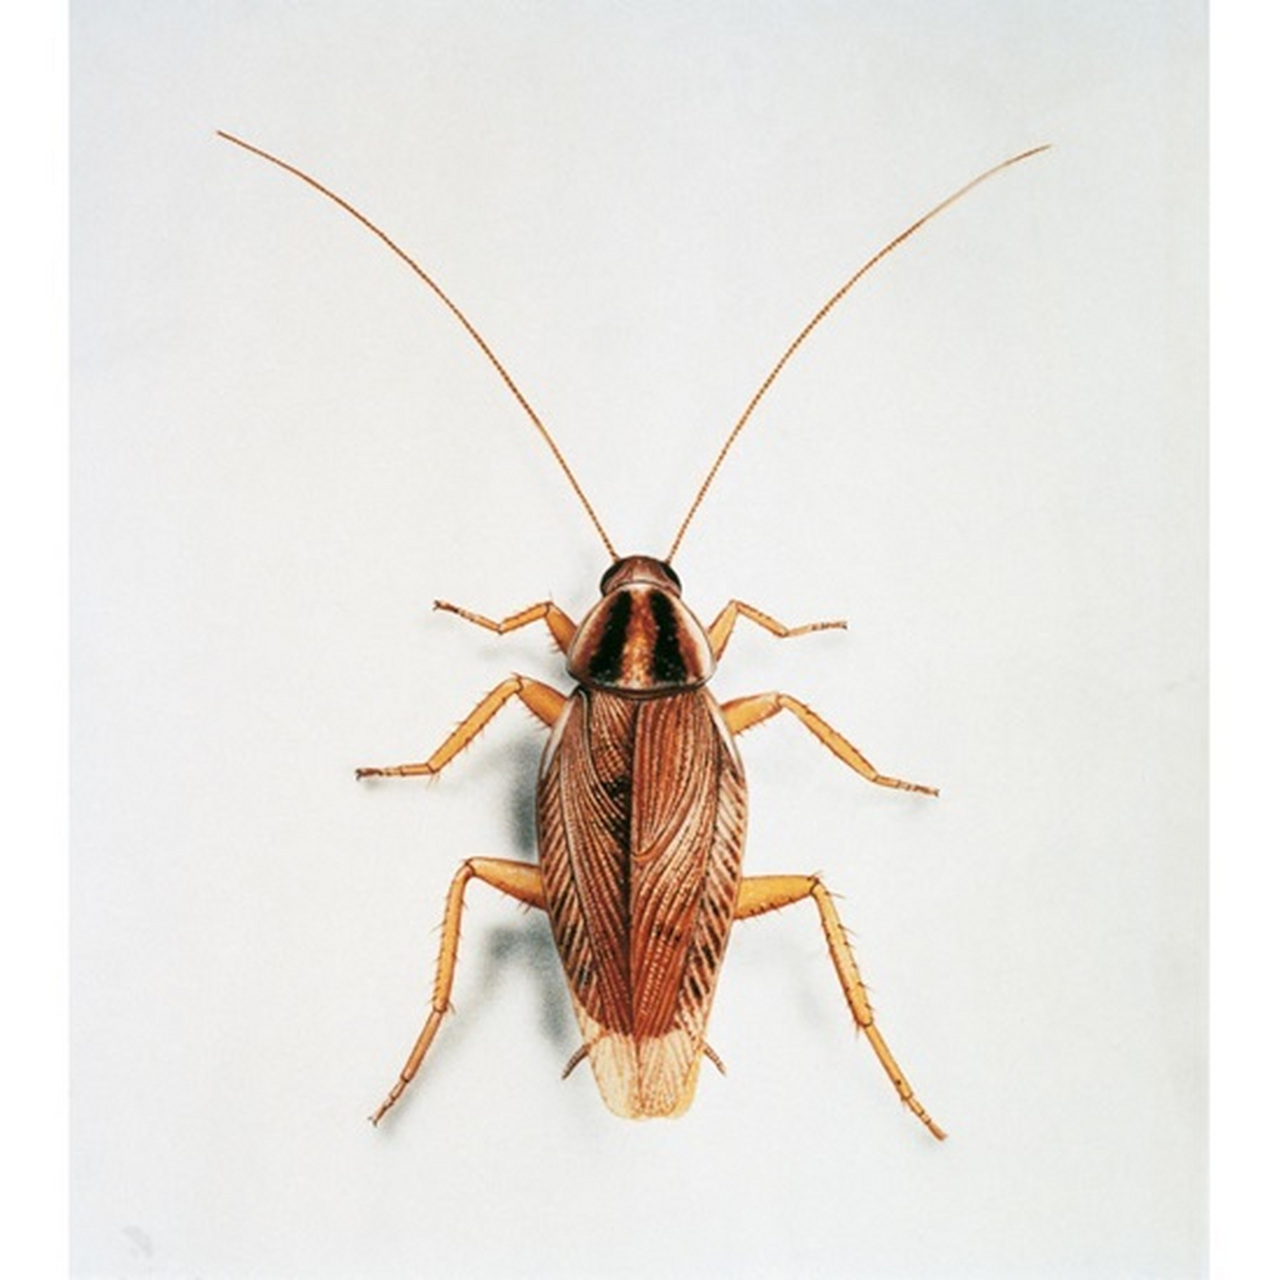 每日识虫~德国小蠊 类别 物种类别:蟑螂 学名:德国小蠊 科属:blatell